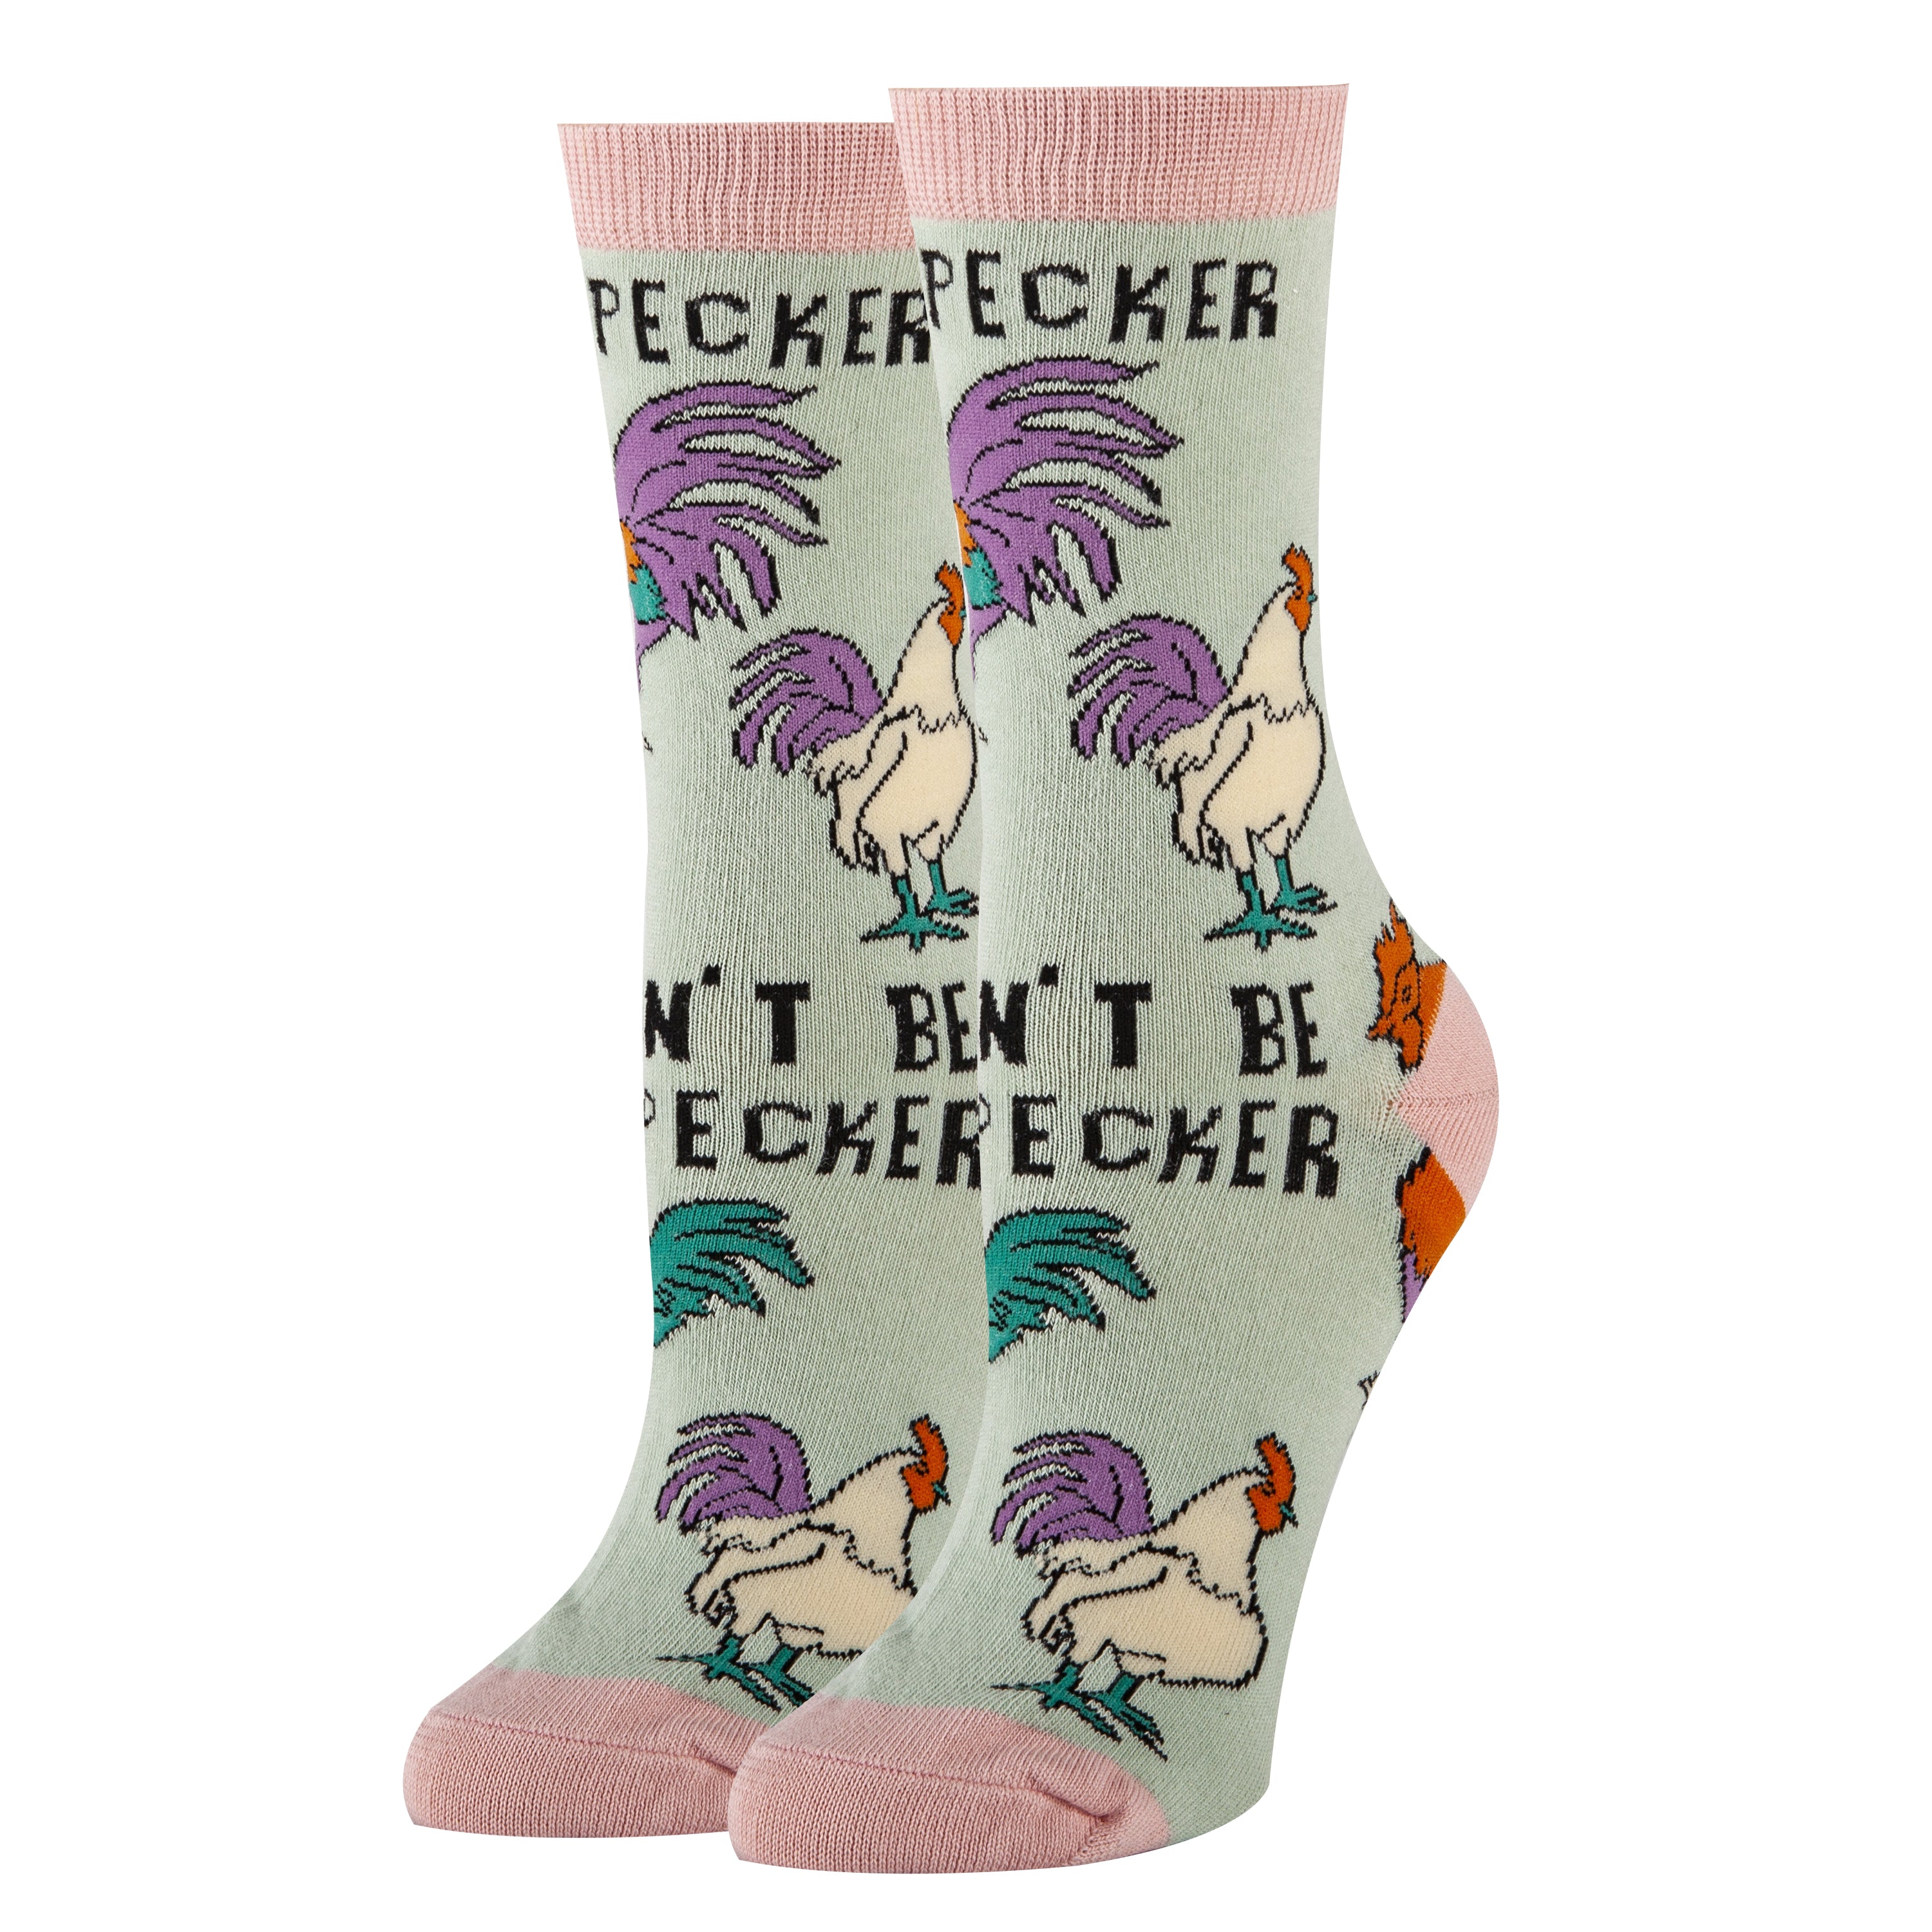 Pecker Socks | Sassy Crew Socks For Men